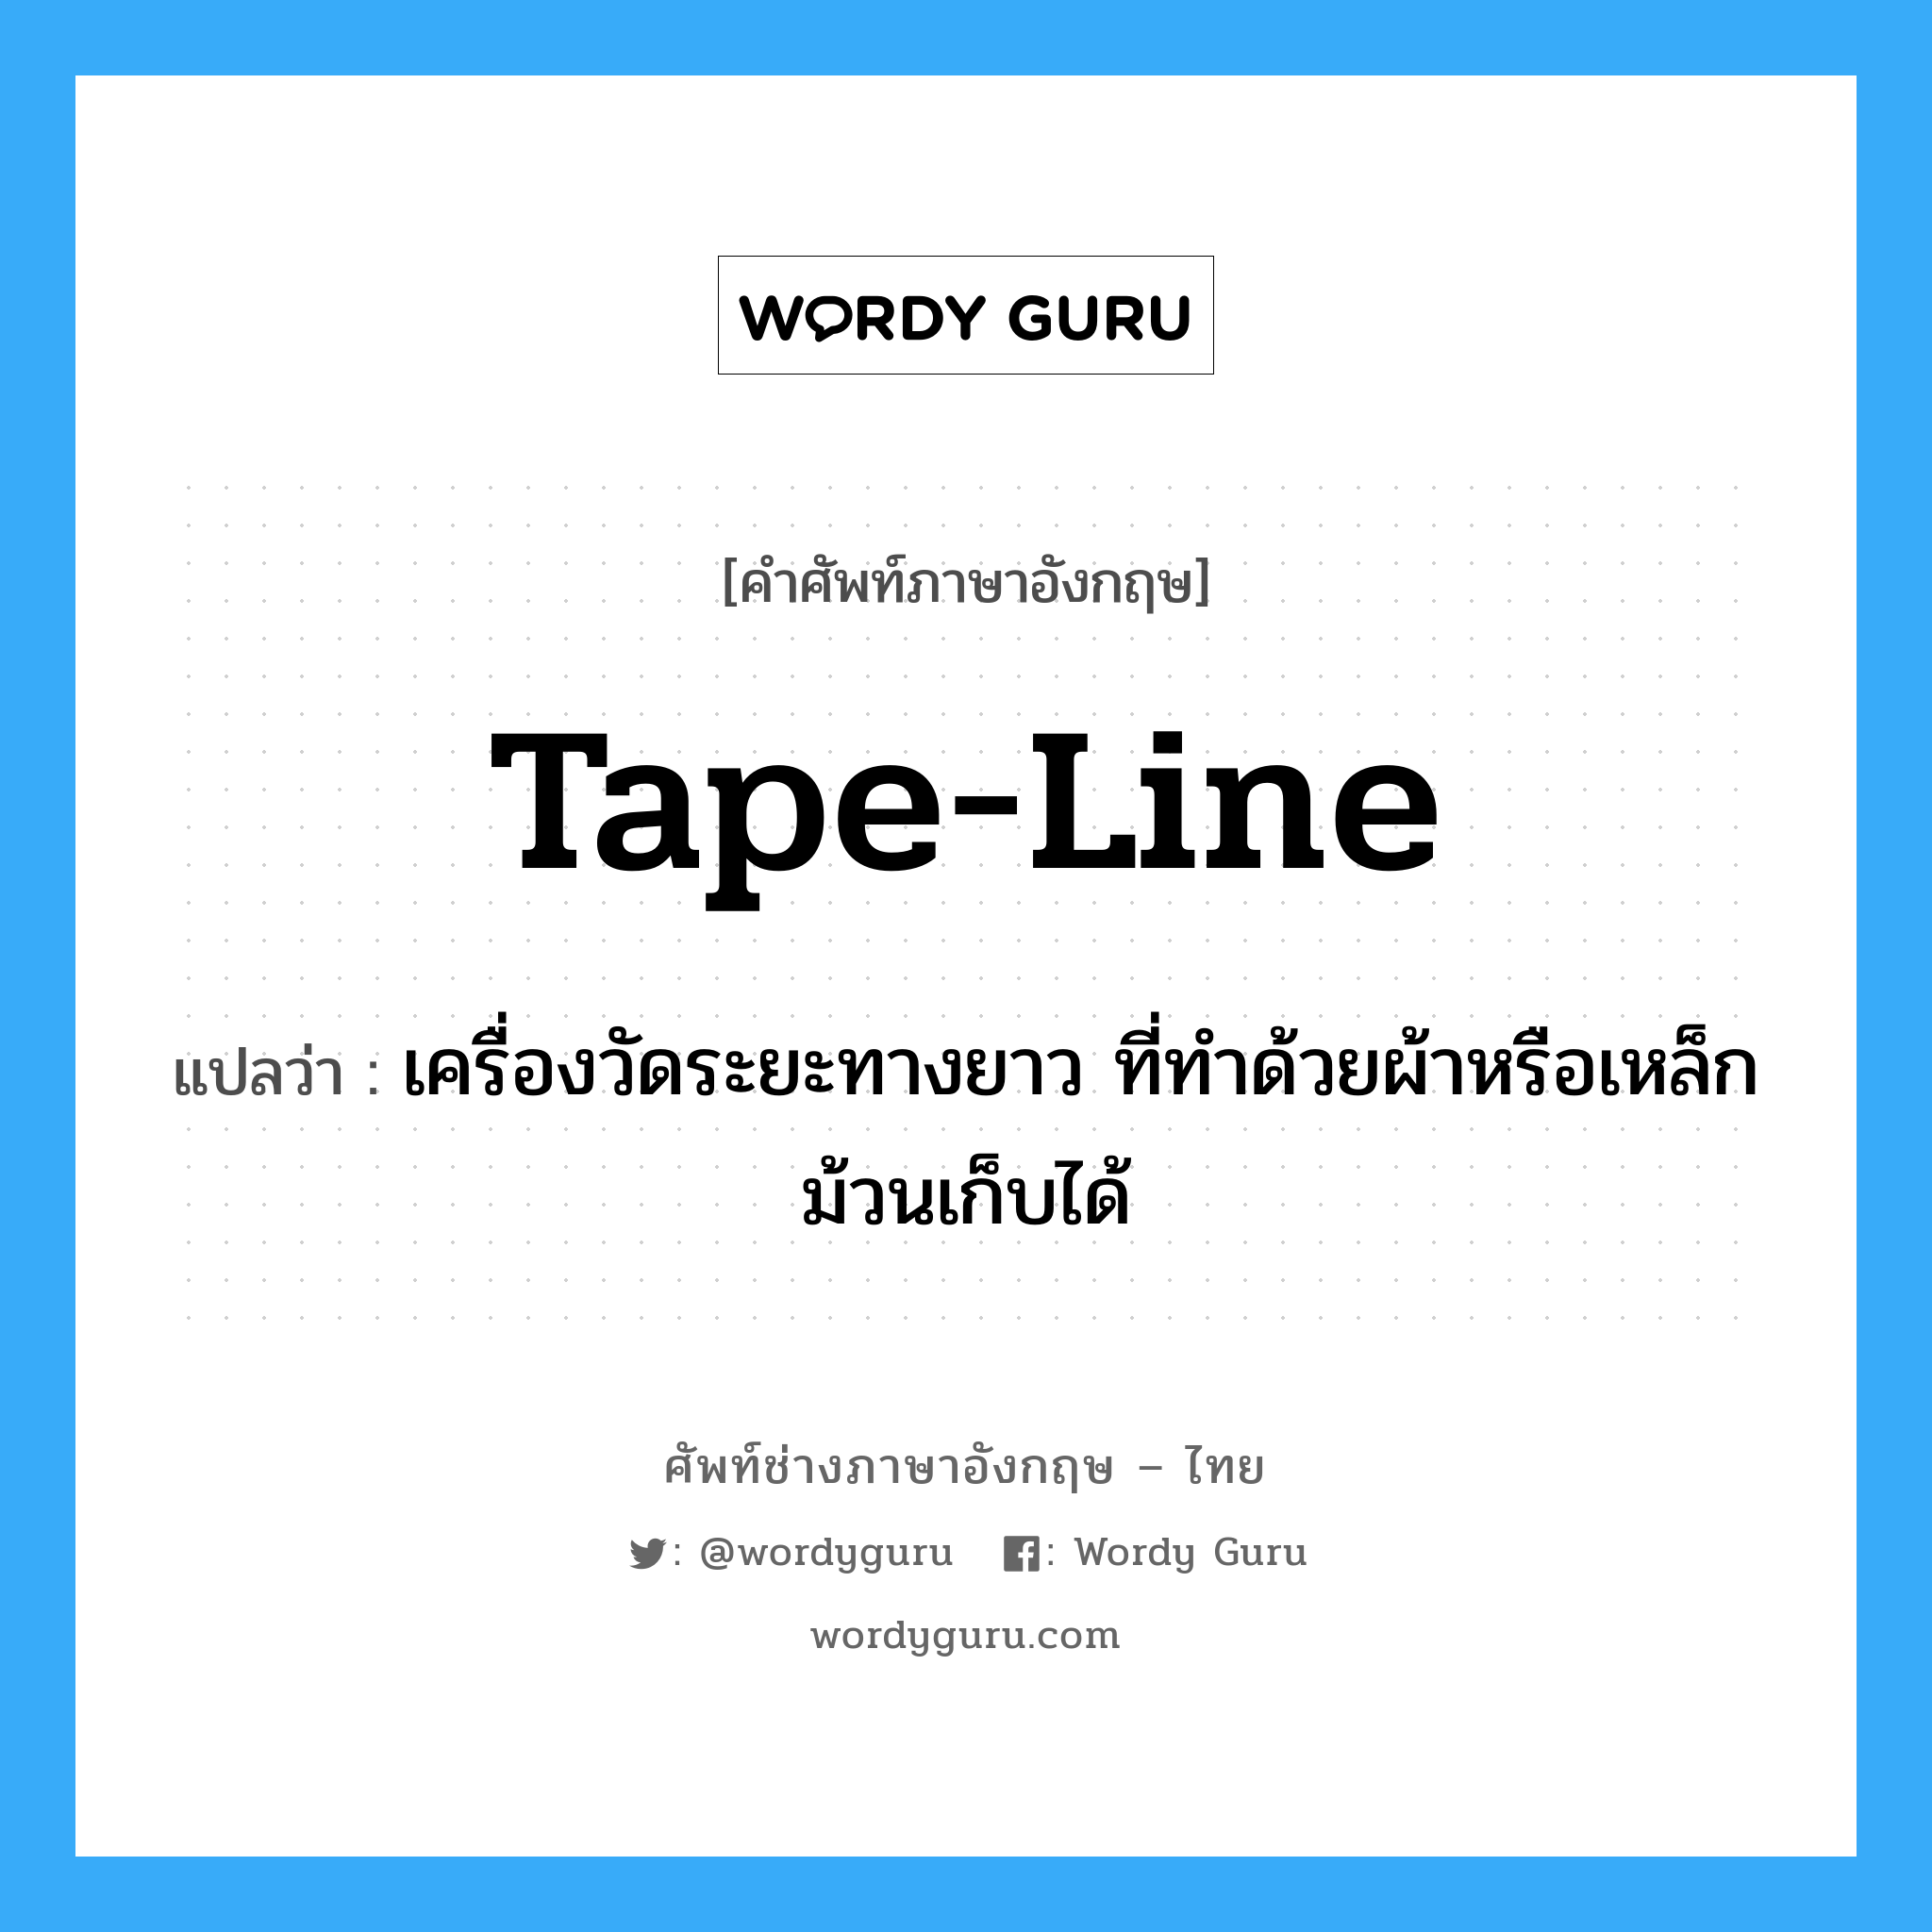 tape-line แปลว่า?, คำศัพท์ช่างภาษาอังกฤษ - ไทย tape-line คำศัพท์ภาษาอังกฤษ tape-line แปลว่า เครื่องวัดระยะทางยาว ที่ทำด้วยผ้าหรือเหล็กม้วนเก็บได้